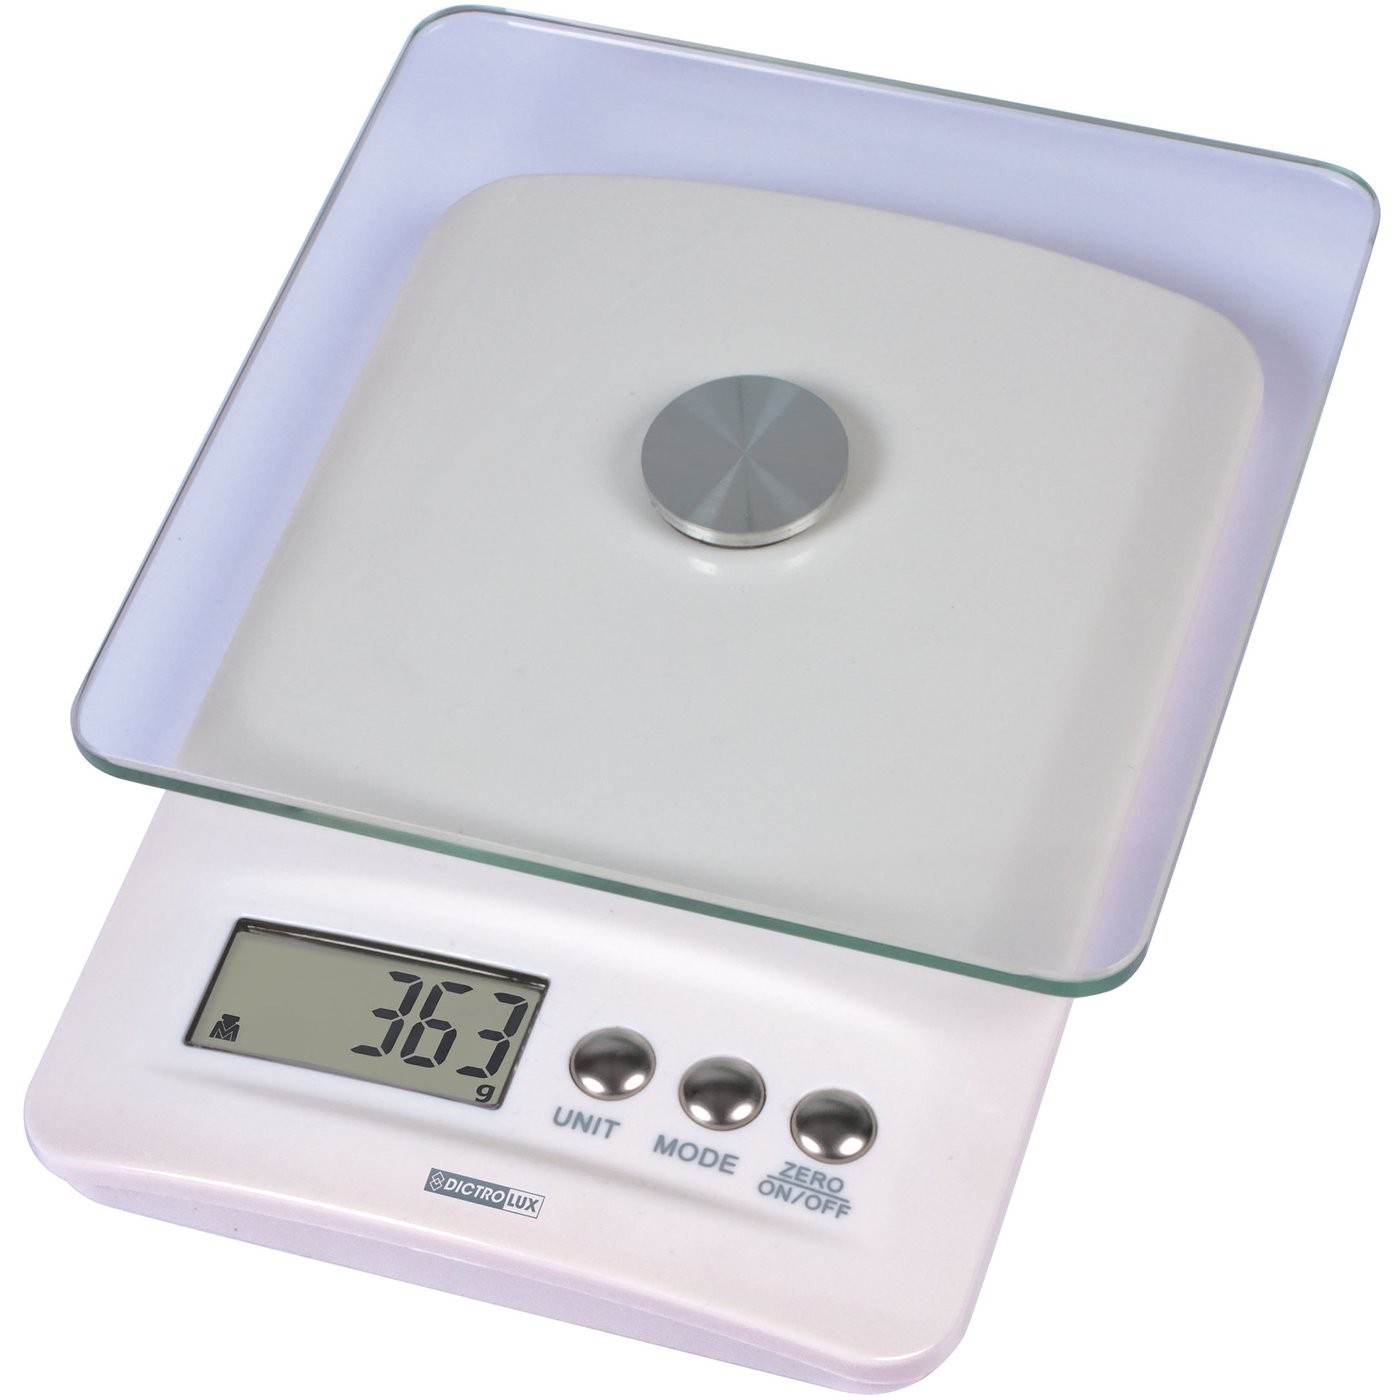 Bilancia da cucina digitale da 5 kg per risultati di pesatura accurati